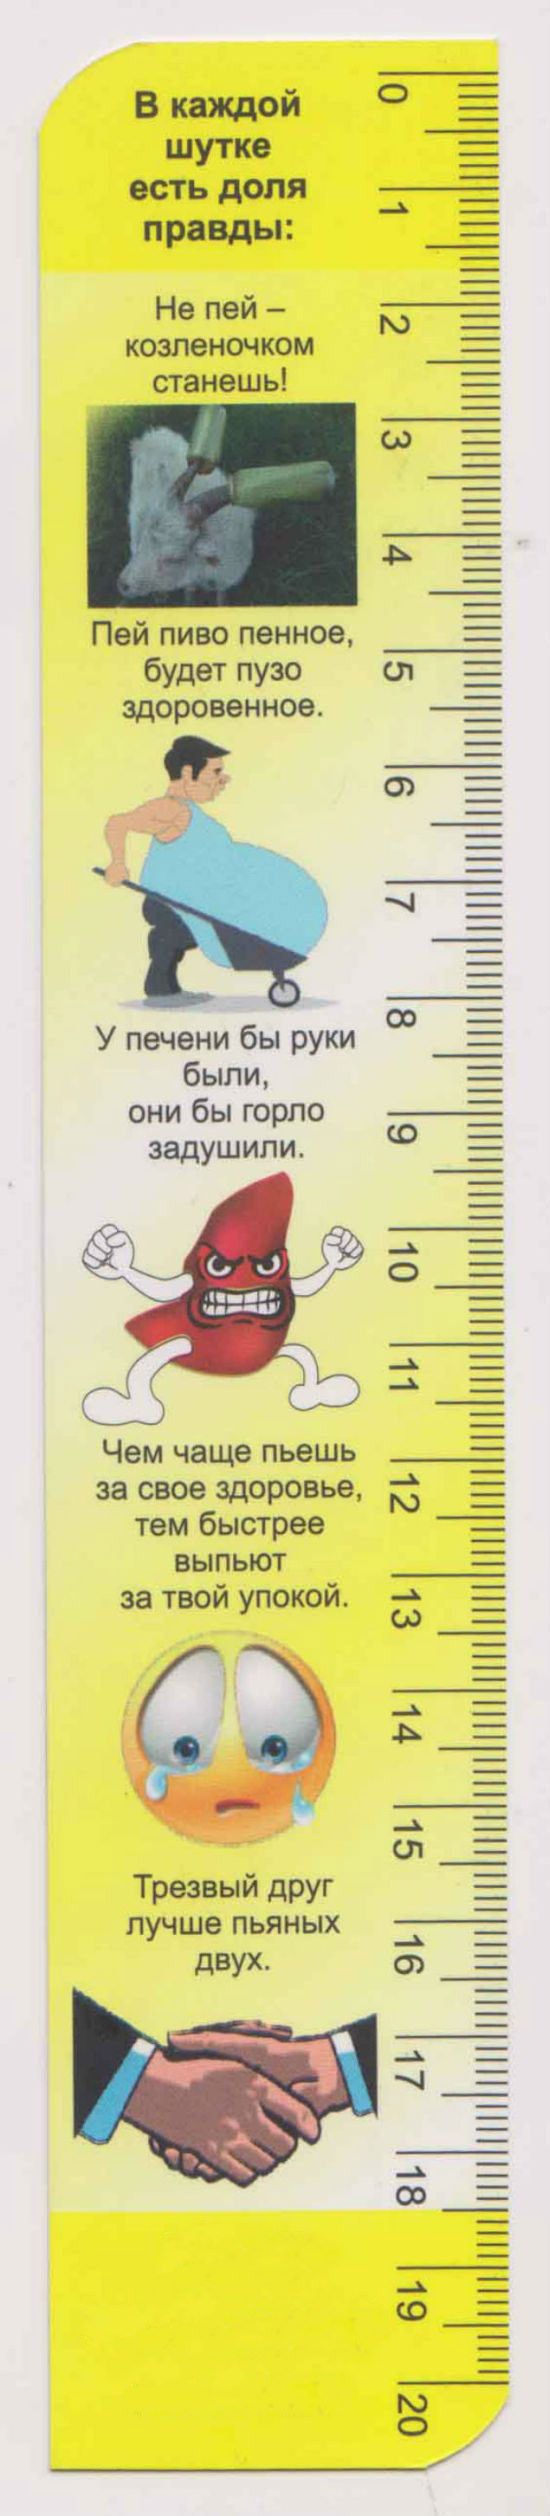 В Ярославле учащиеся школ получили закладки с антиалкогольной пропагандой (2 фото)